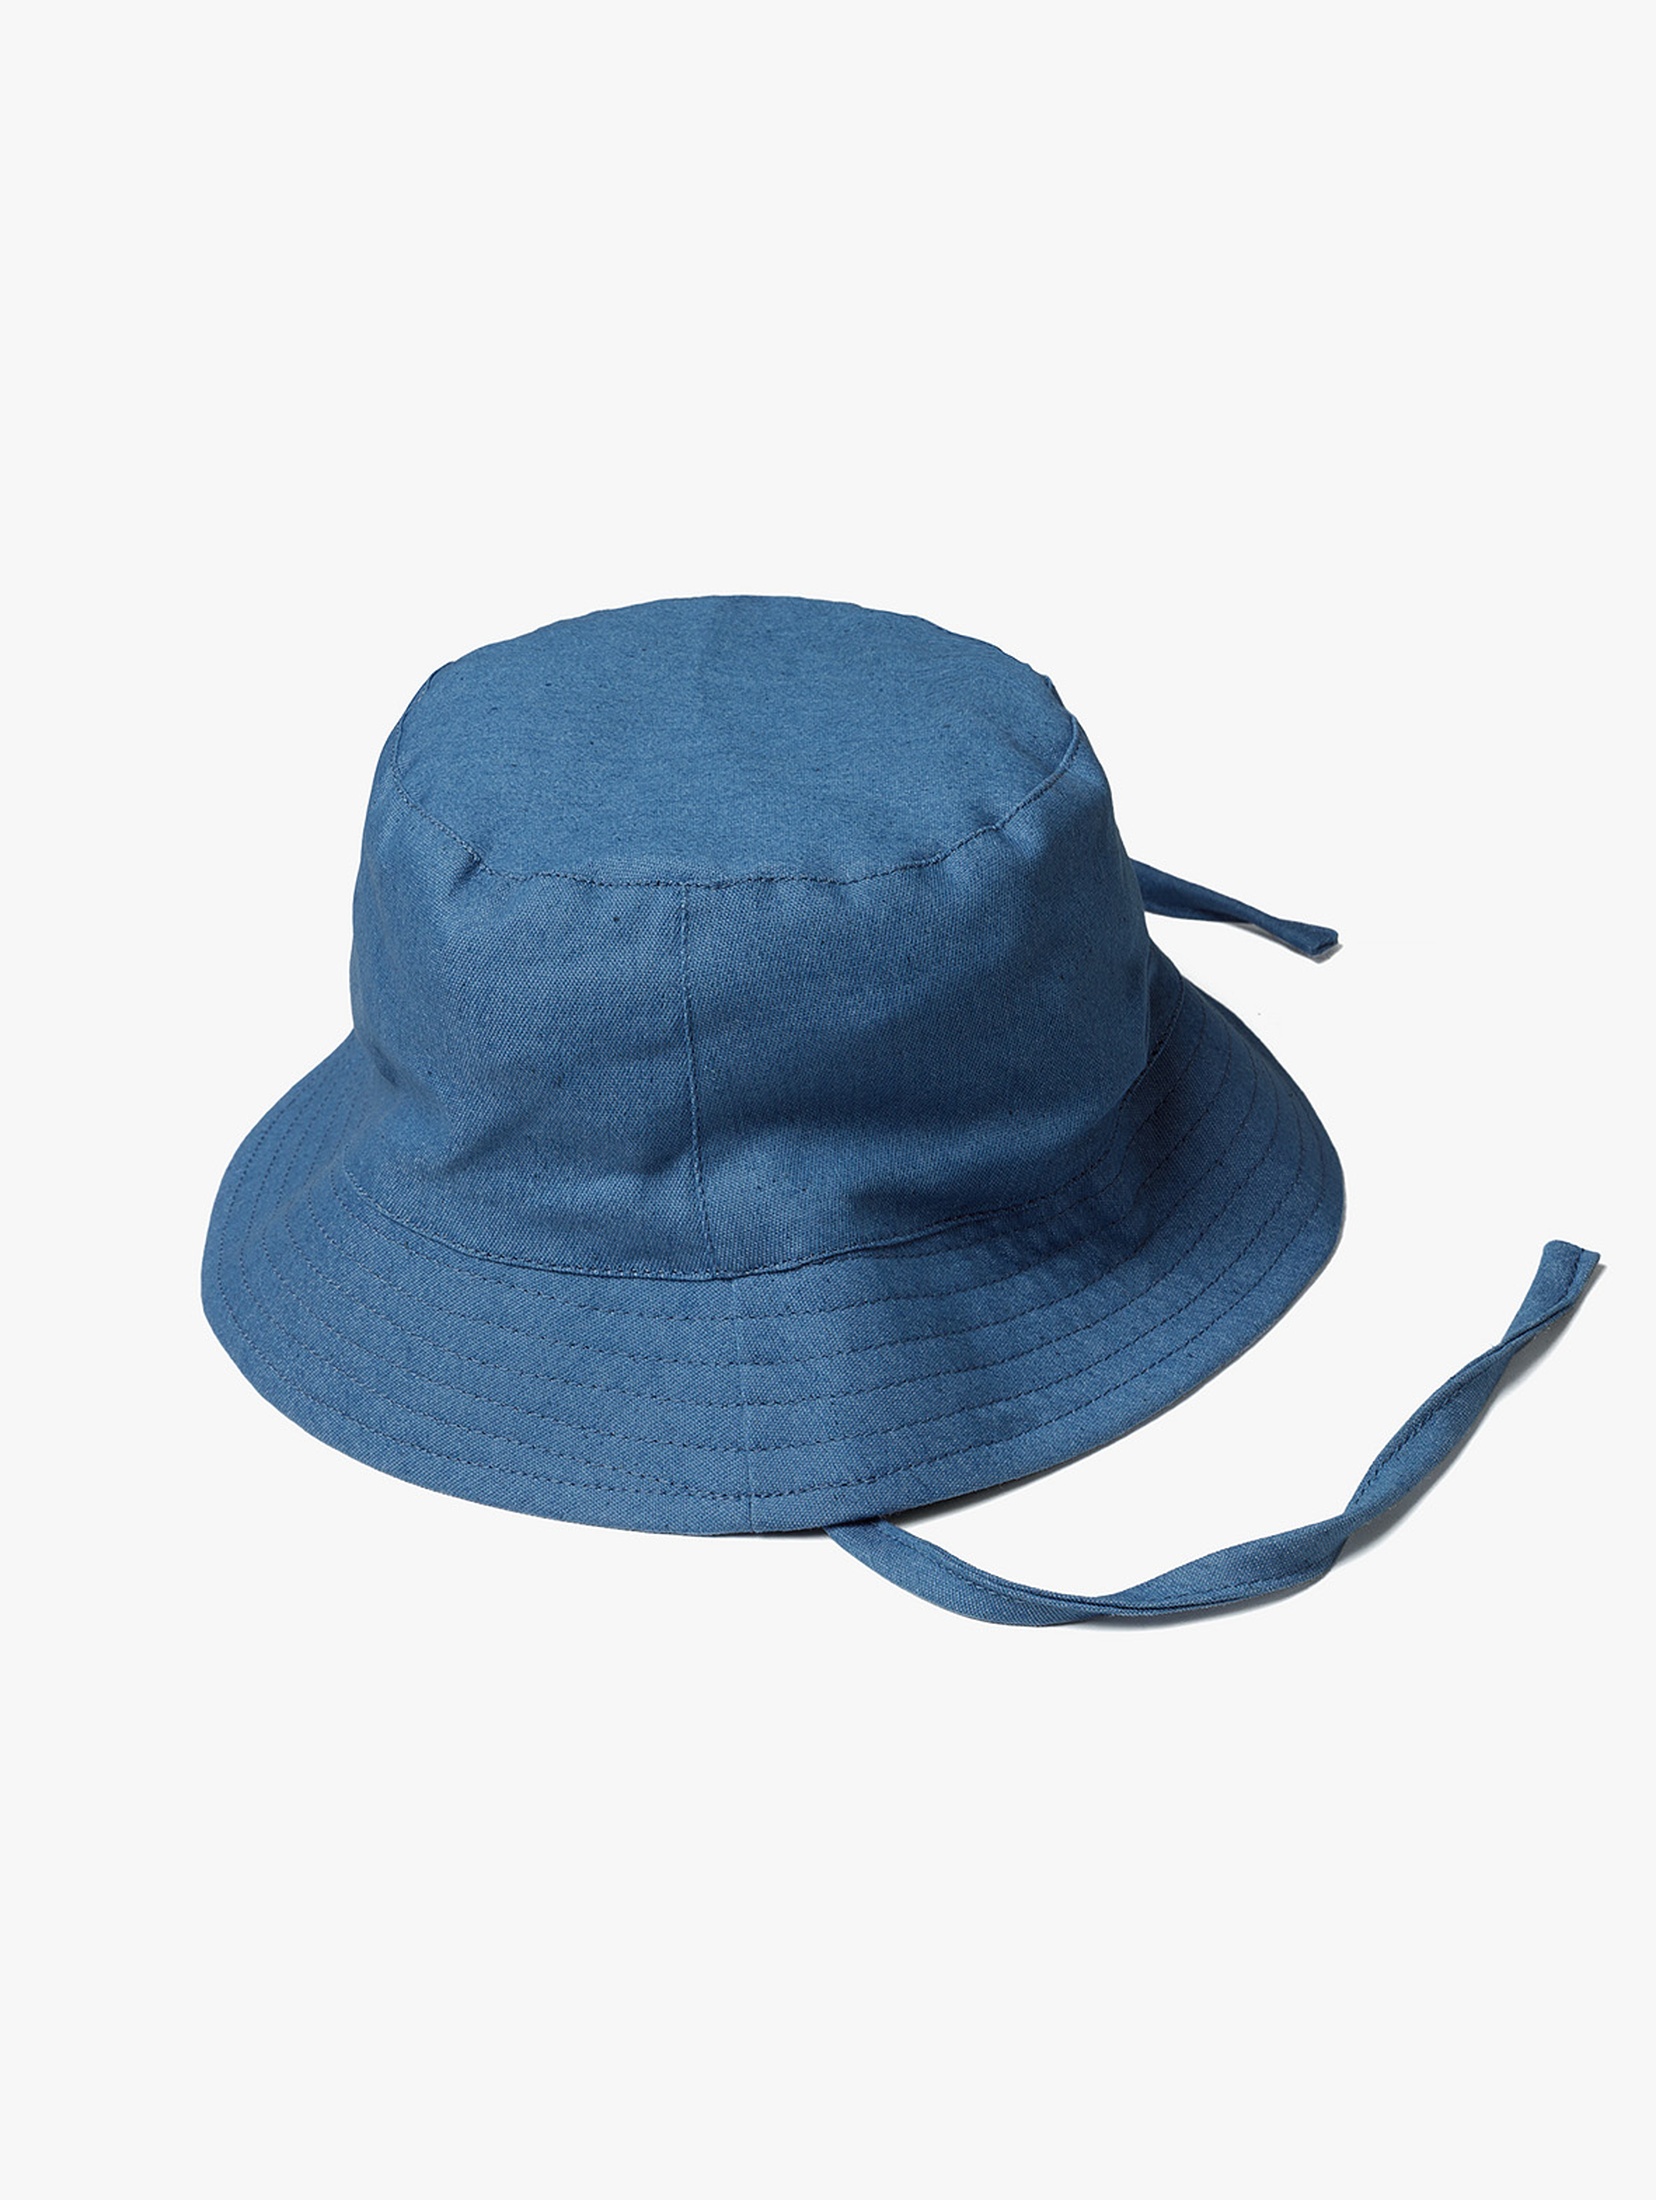 Niebieski kapelusz na lato dla niemowlaka - 5.10.15.